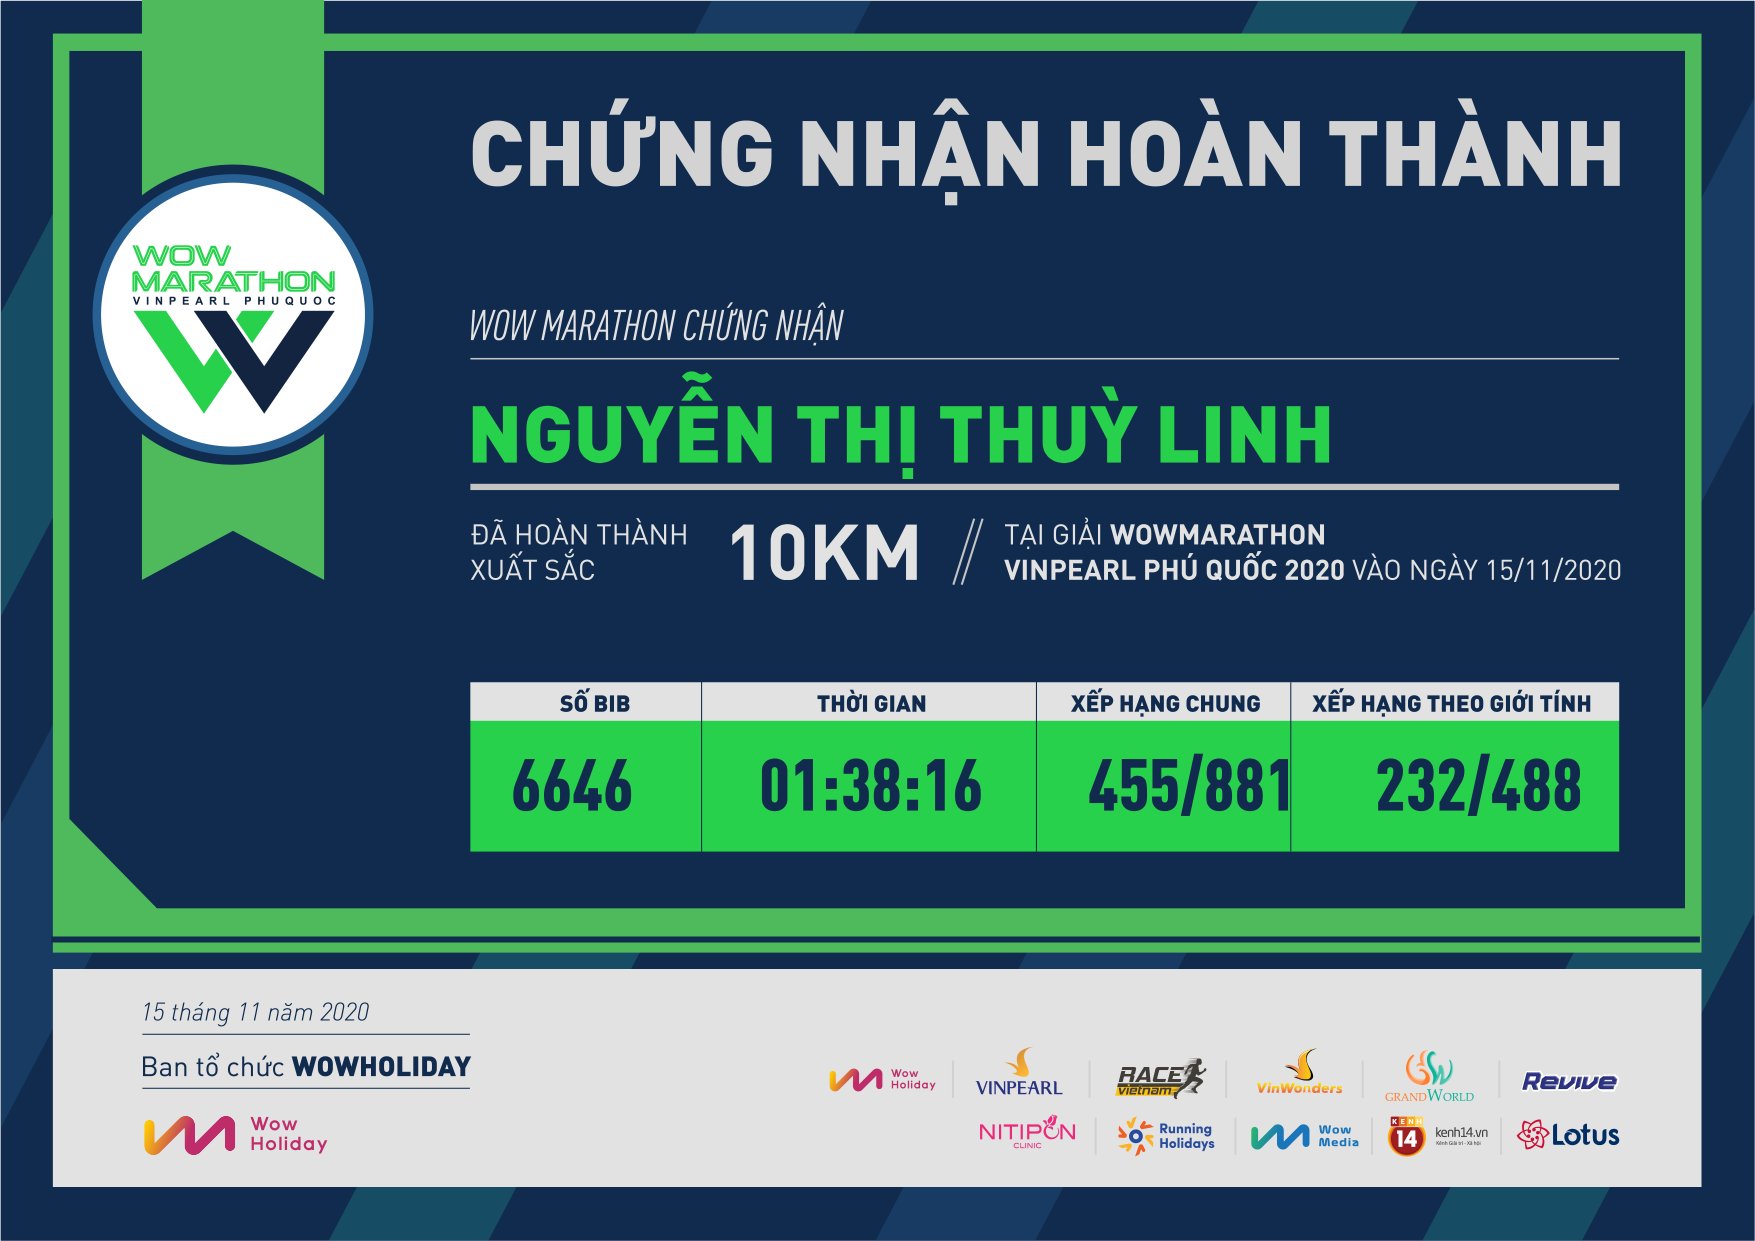 6646 - Nguyễn Thị Thuỳ Linh